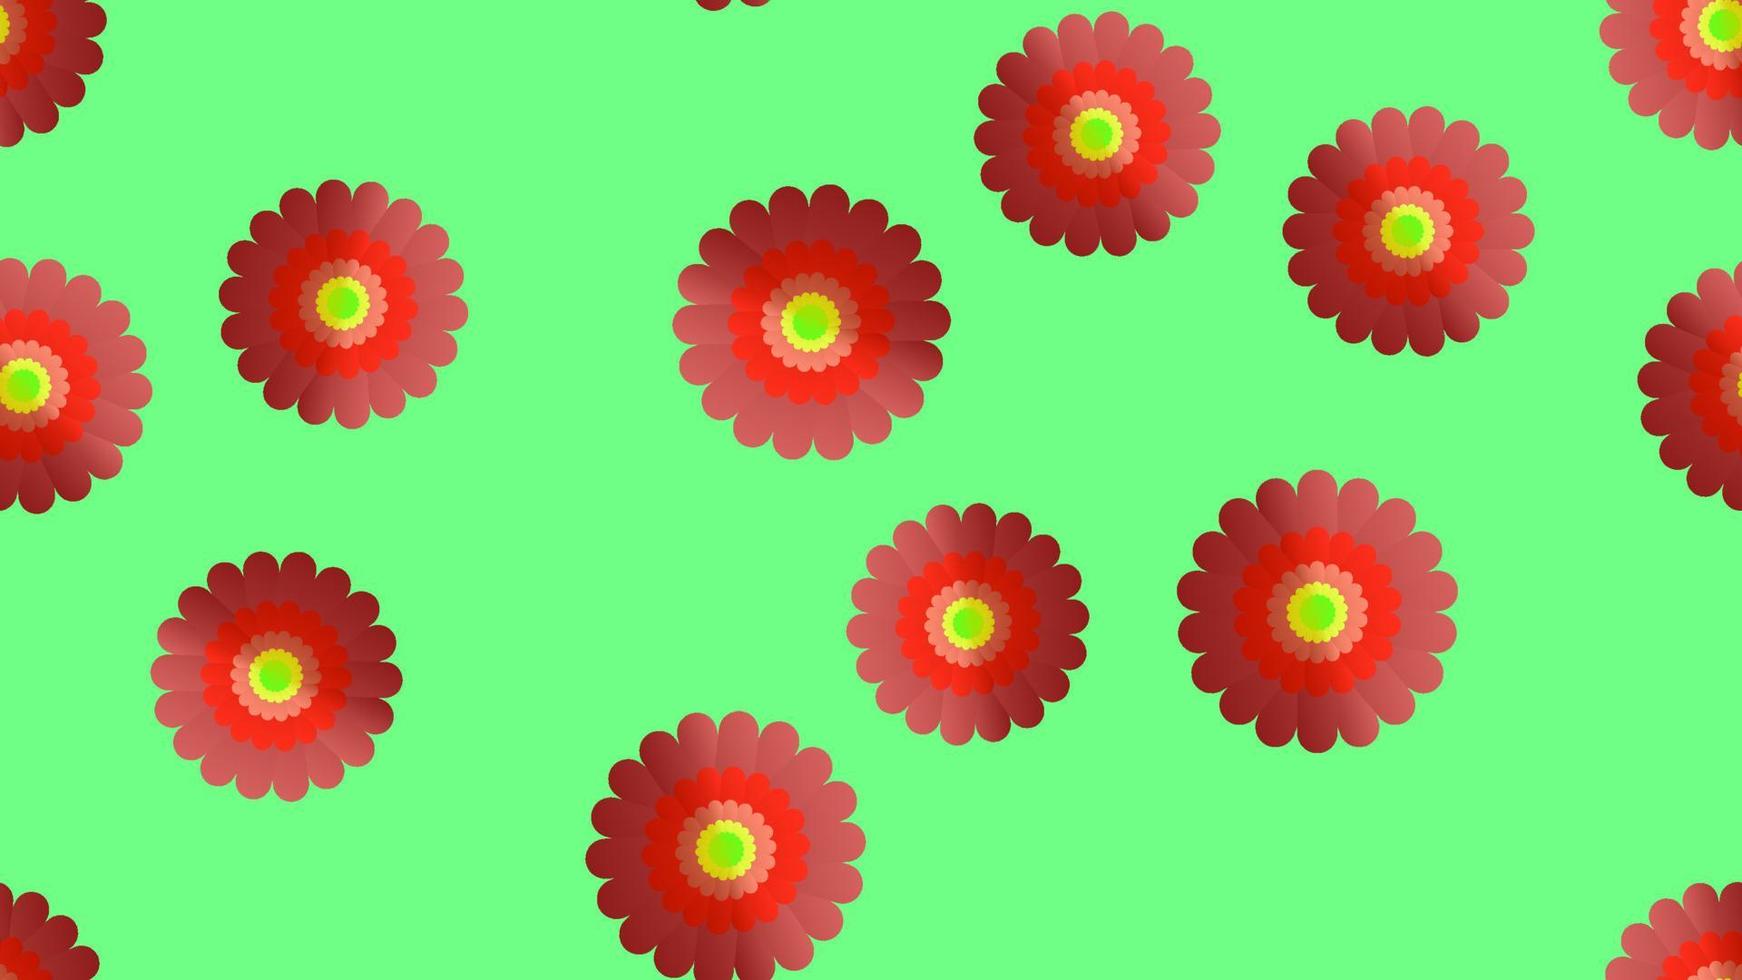 motif harmonieux sans fin de belles fleurs sauvages rouges avec des pétales sur fond vert. illustration vectorielle vecteur